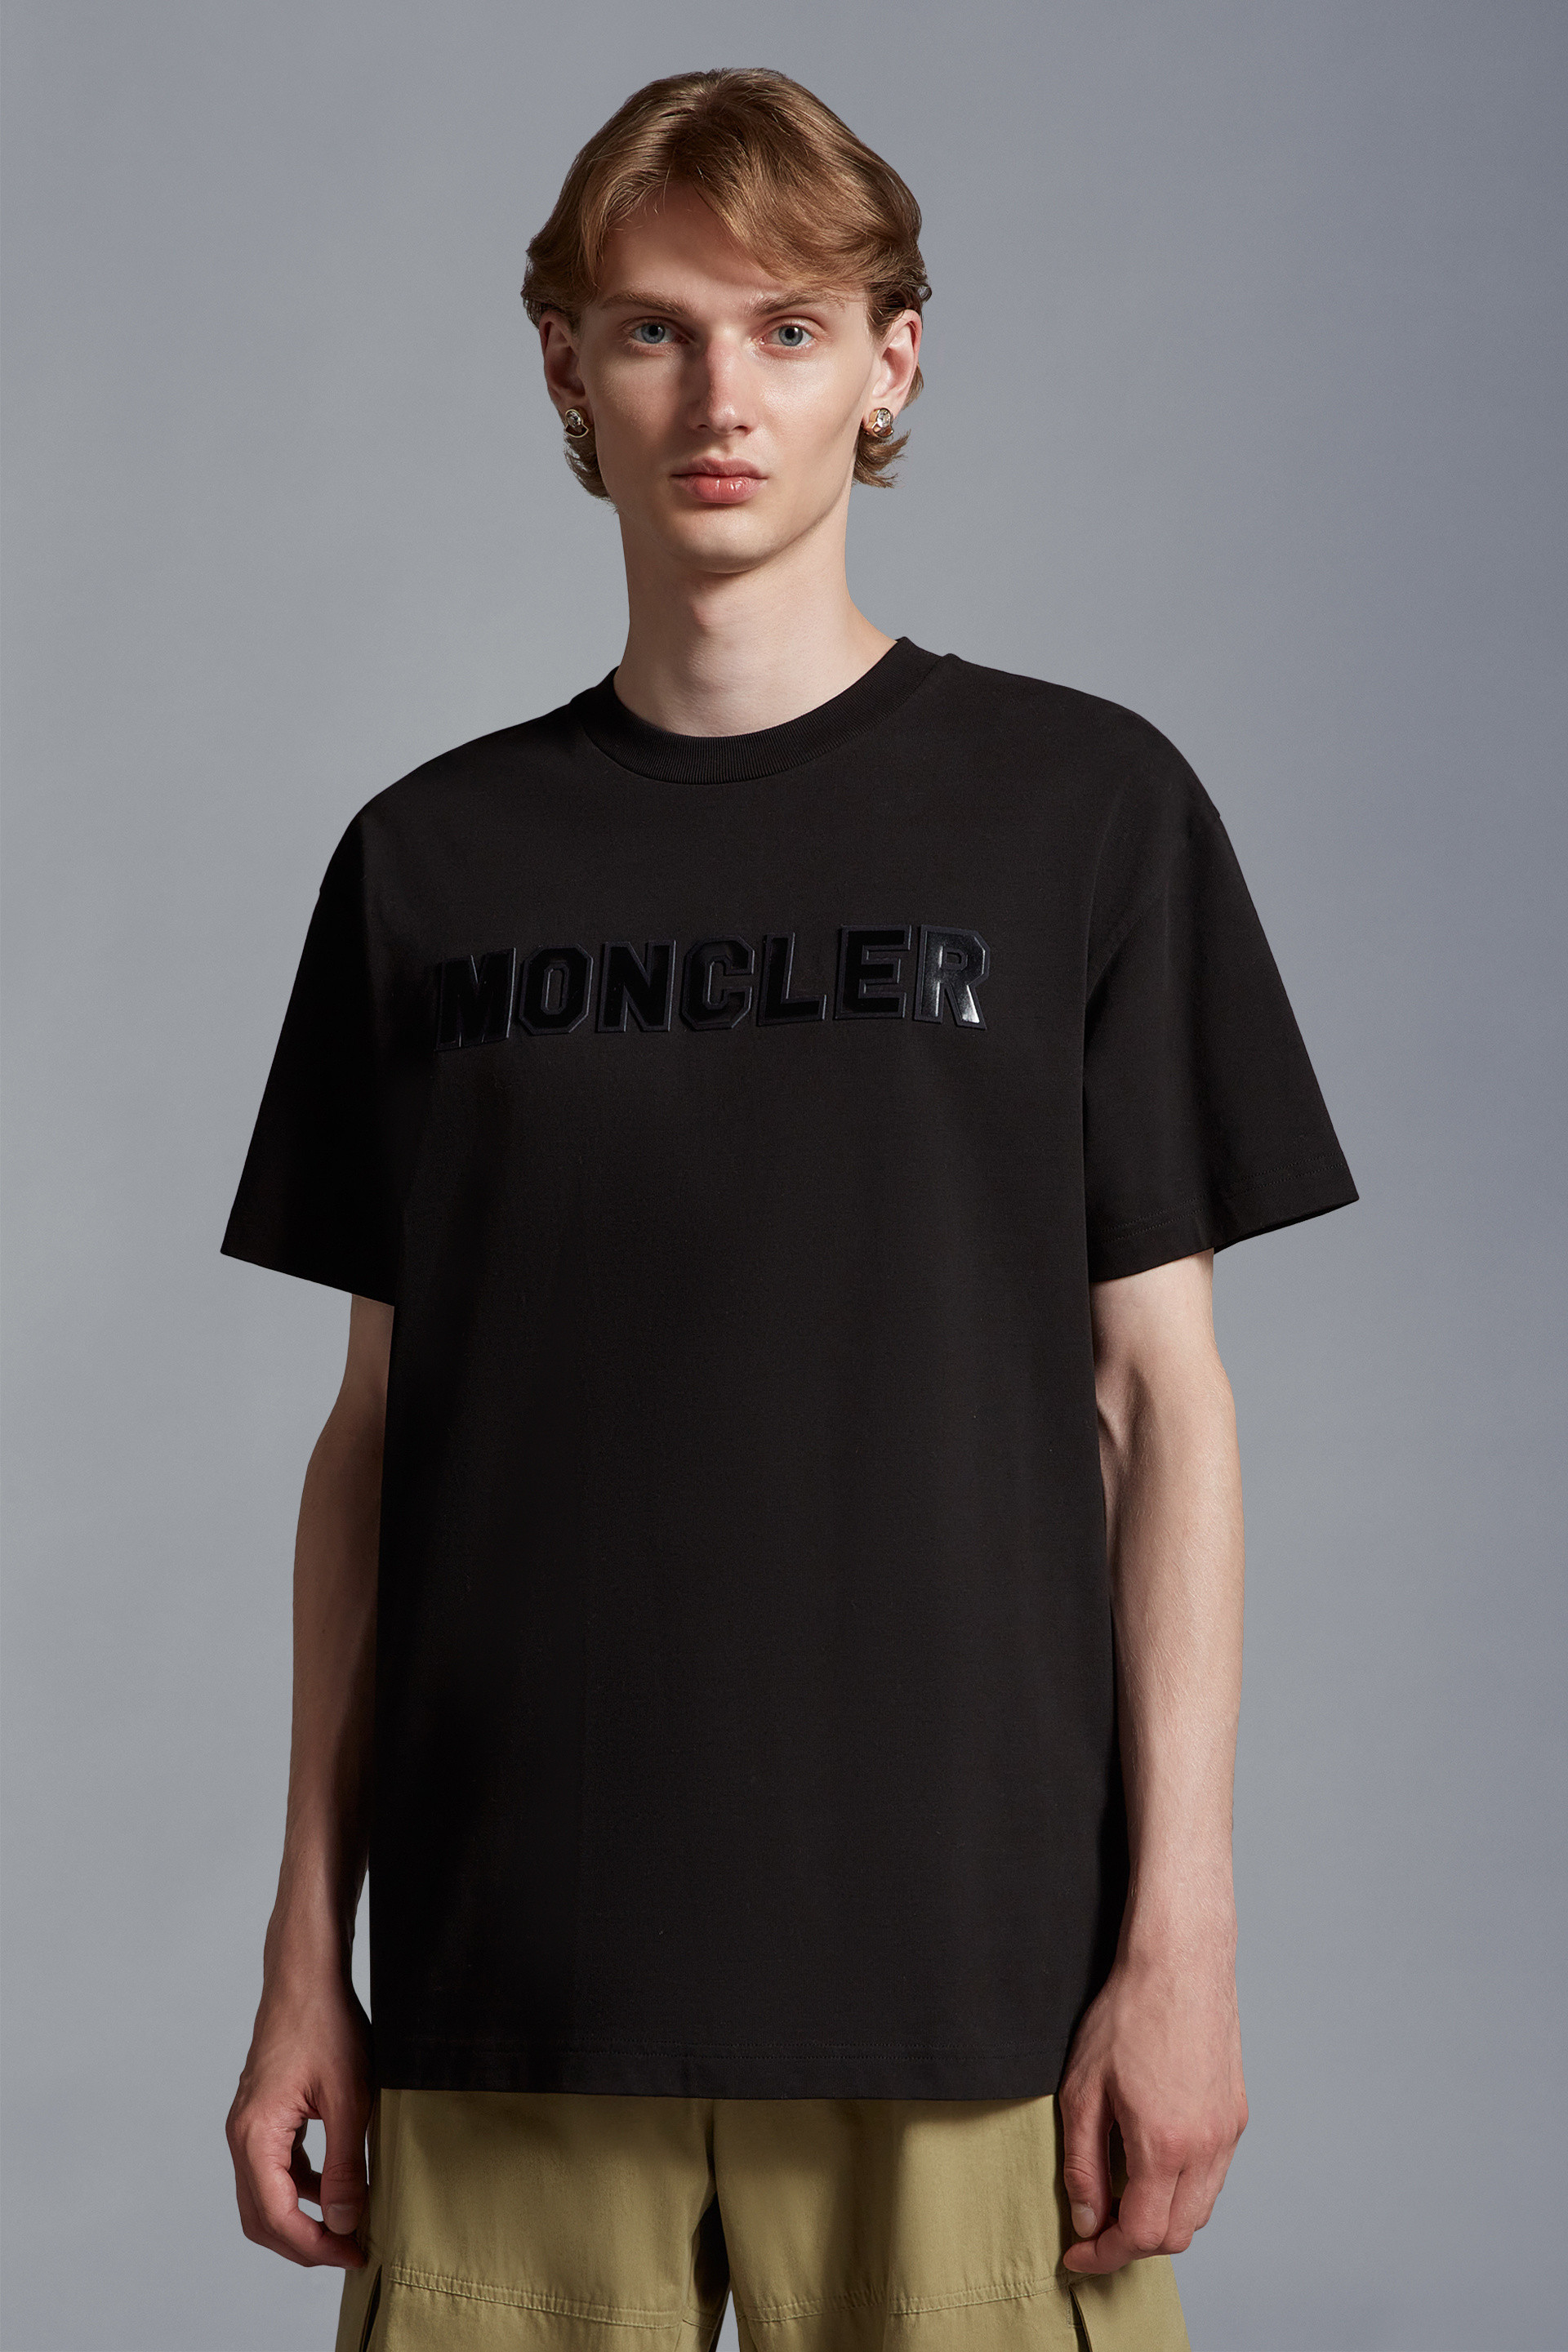 Moncler Men's Authenticated T-Shirt